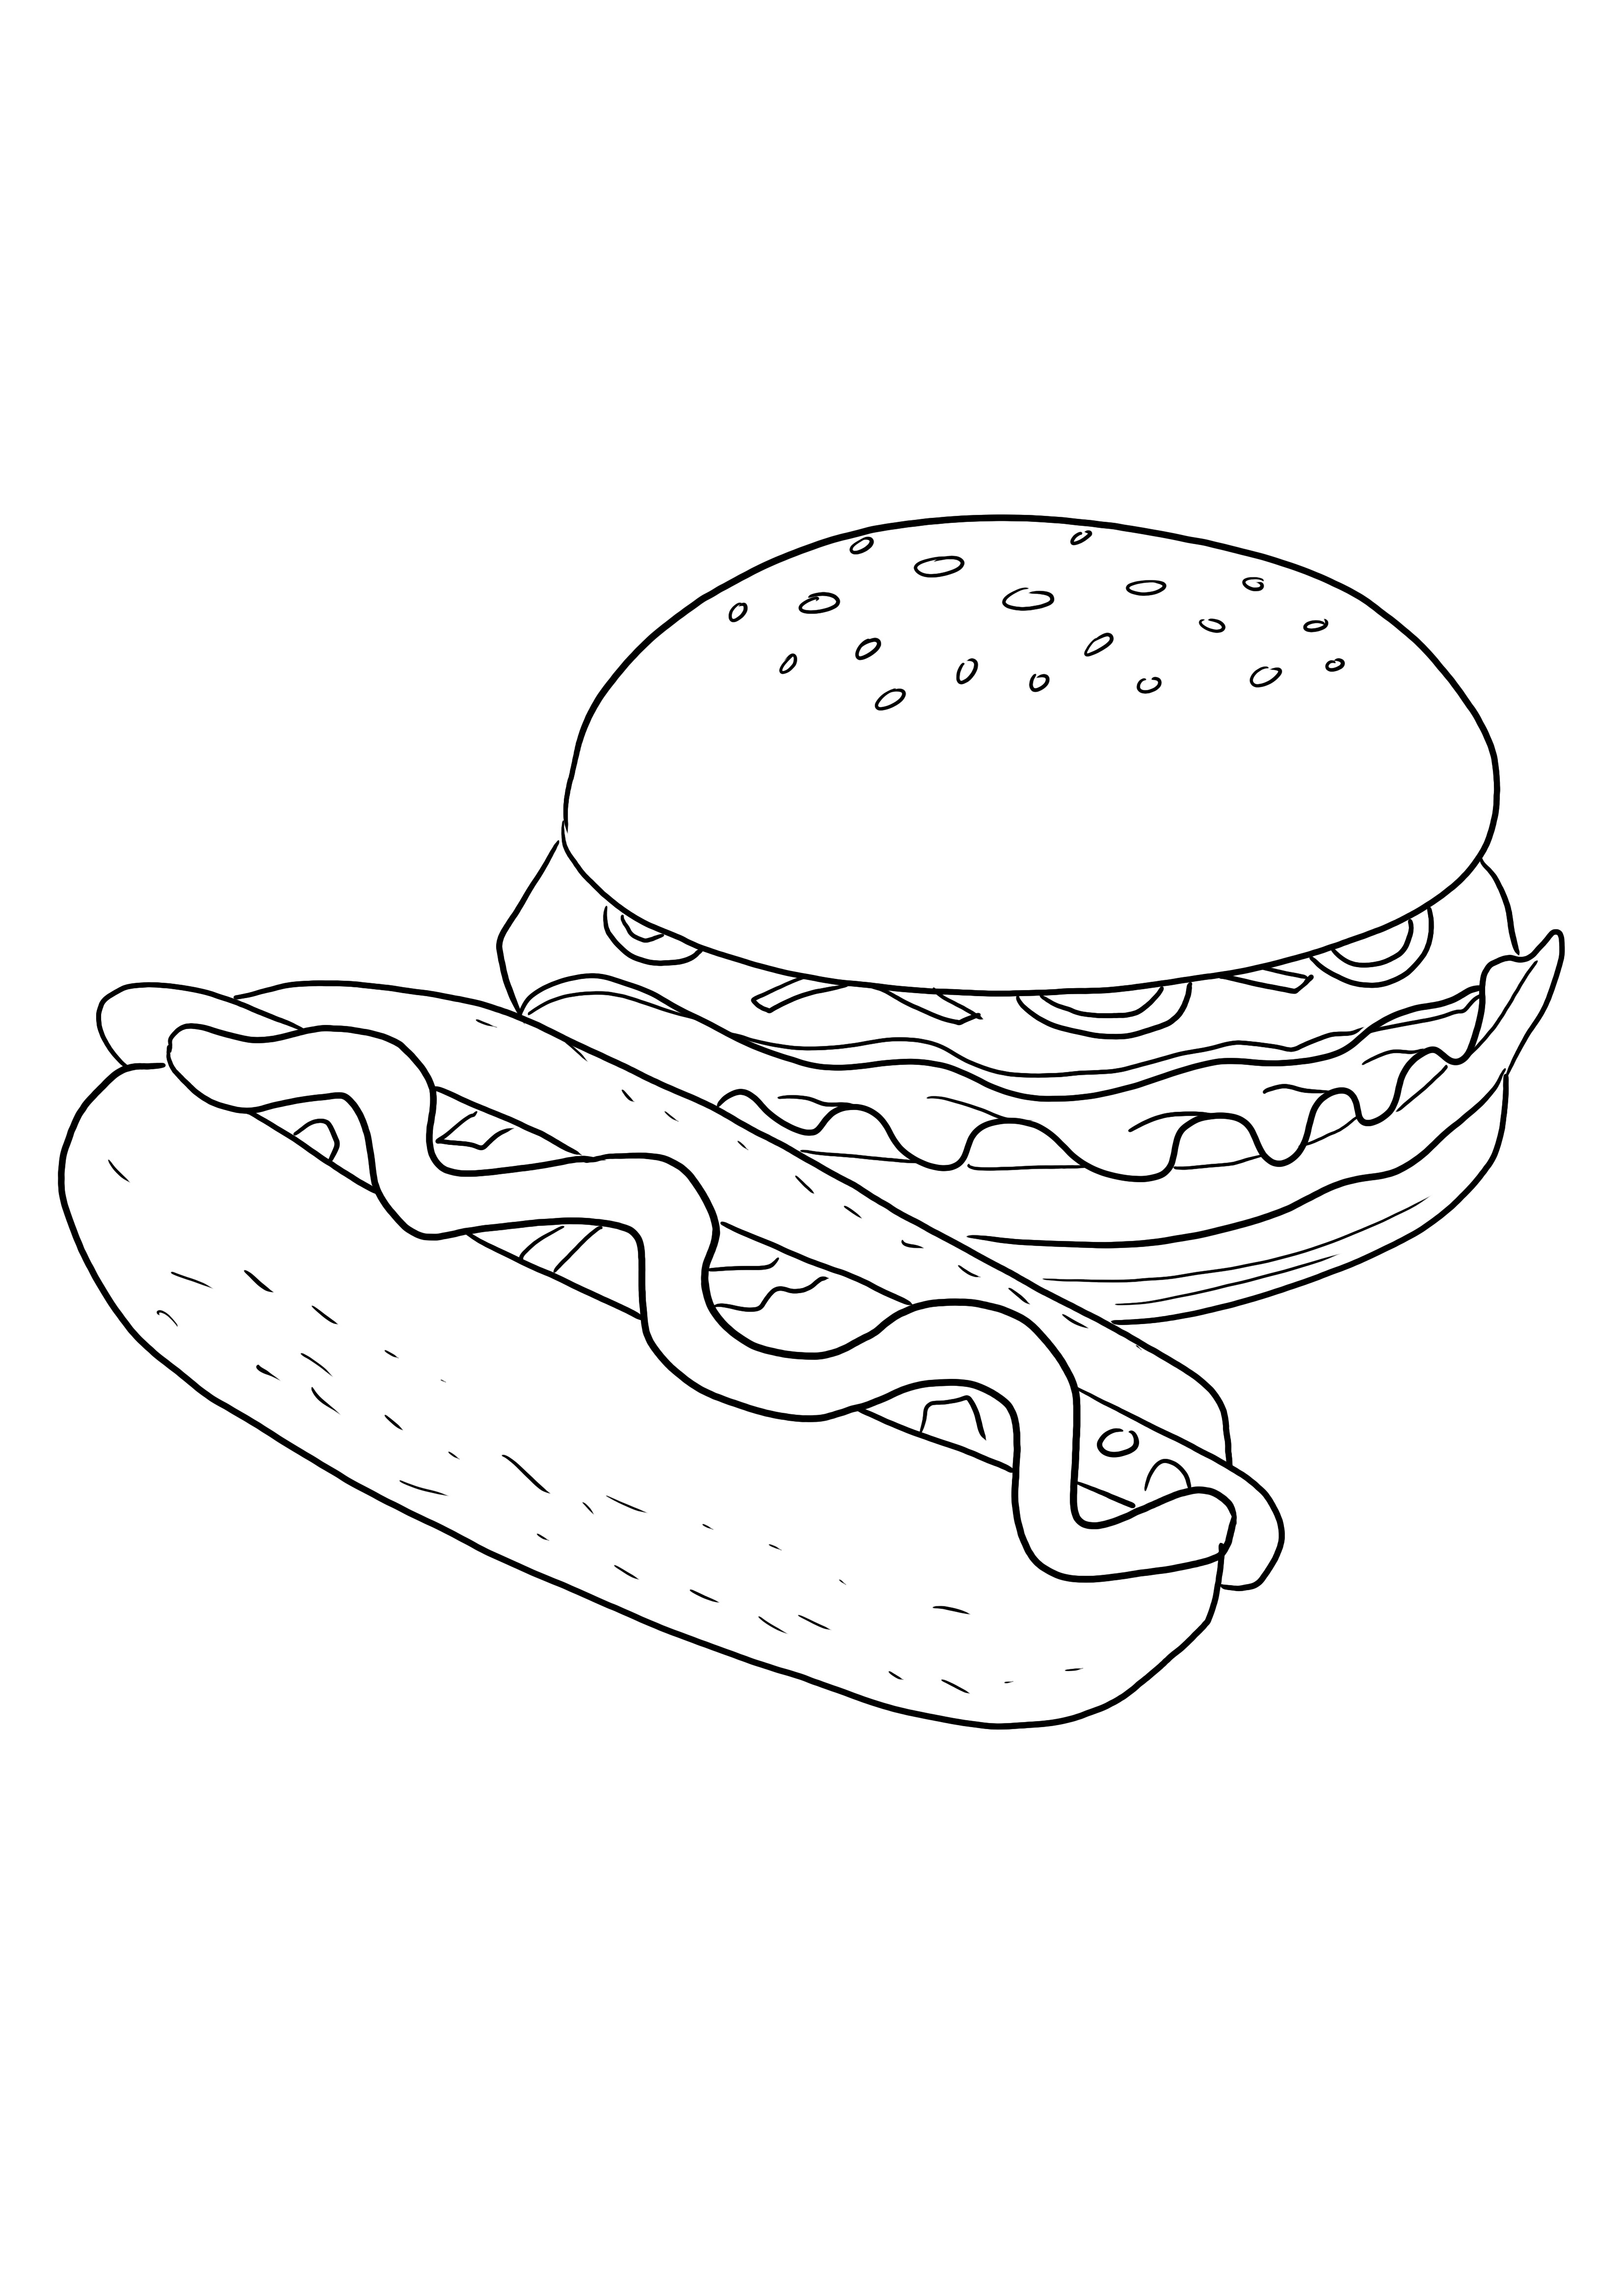 Łatwe kolorowanie Hot doga i hamburgera oraz bezpłatne drukowanie obrazu dla dzieci